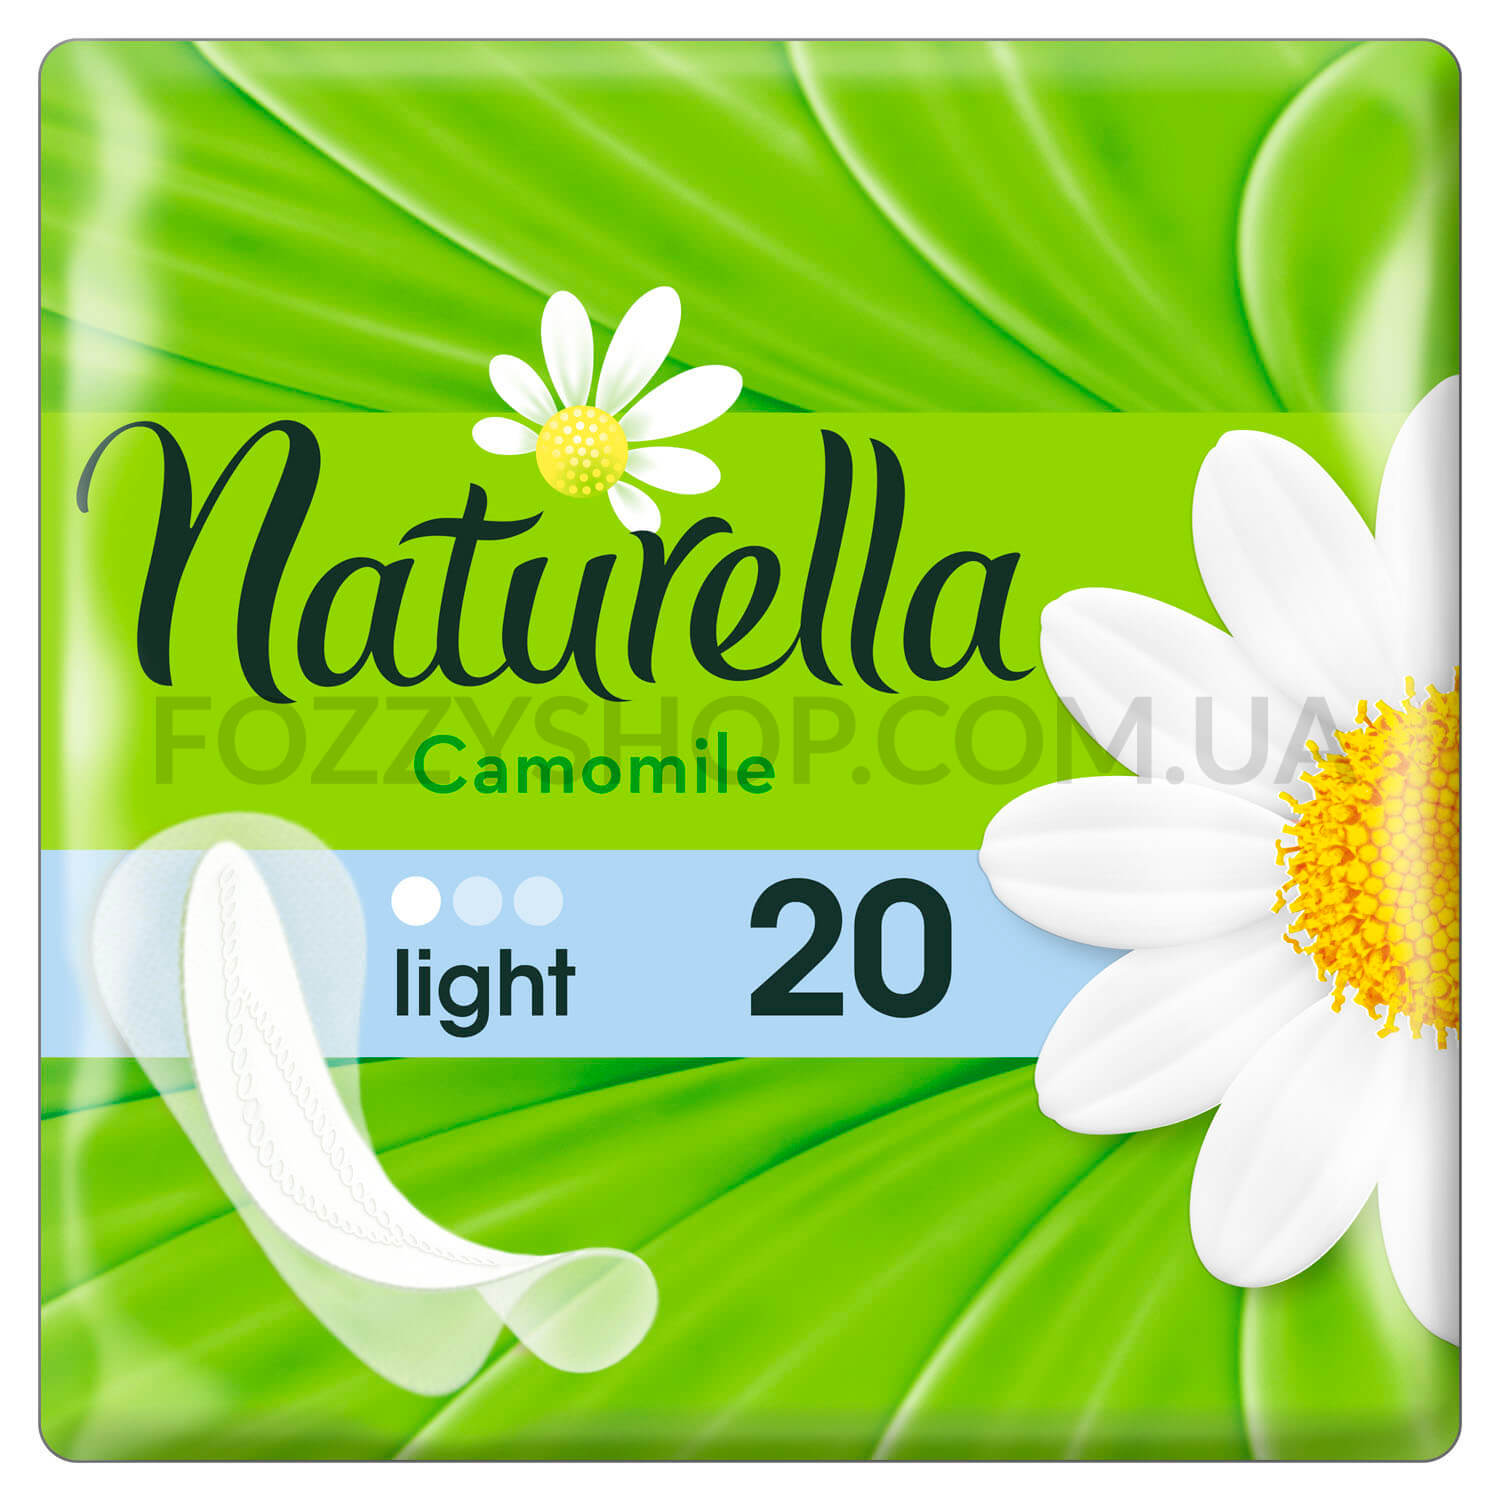 Ежедневные гигиенические прокладки Naturella Сamomile Light 20 шт, 20шт/уп (Артикул: 352881)